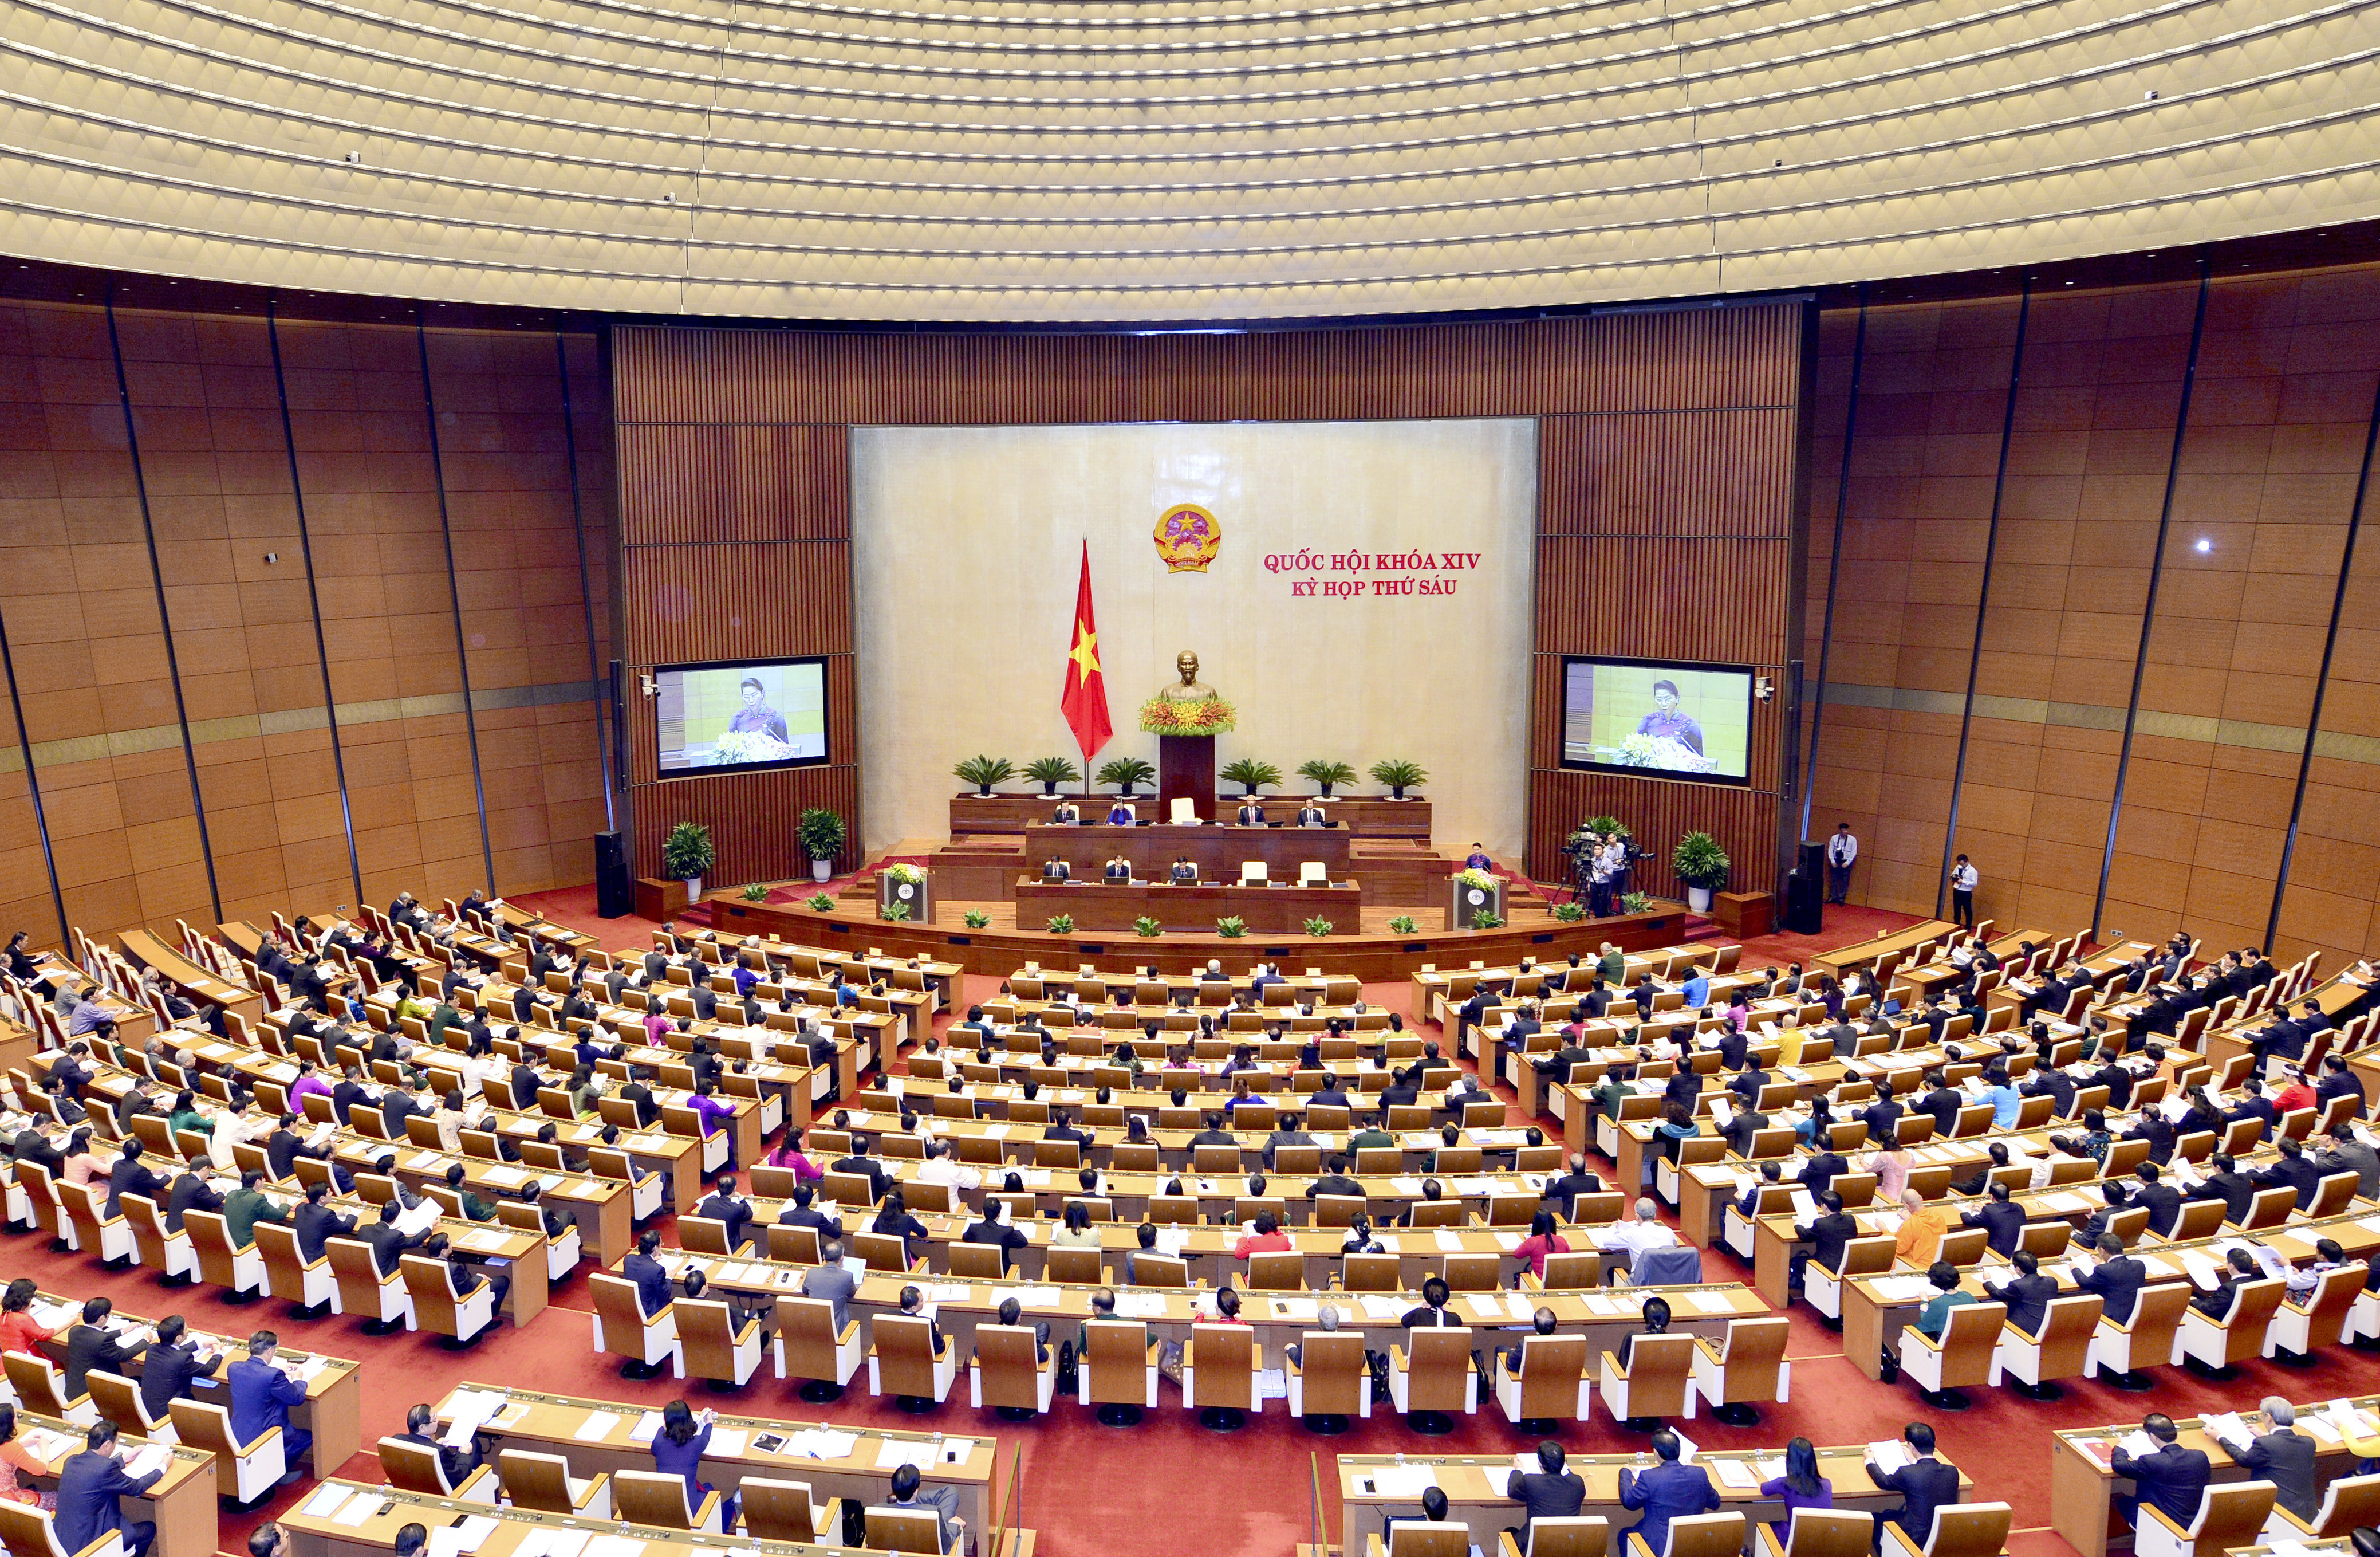 Kỳ họp thứ 6 Quốc hội khóa XIV khai mạc trọng thể tại Hội trường Diên Hồng, Nhà Quốc hội. Ảnh: Thanh Loan